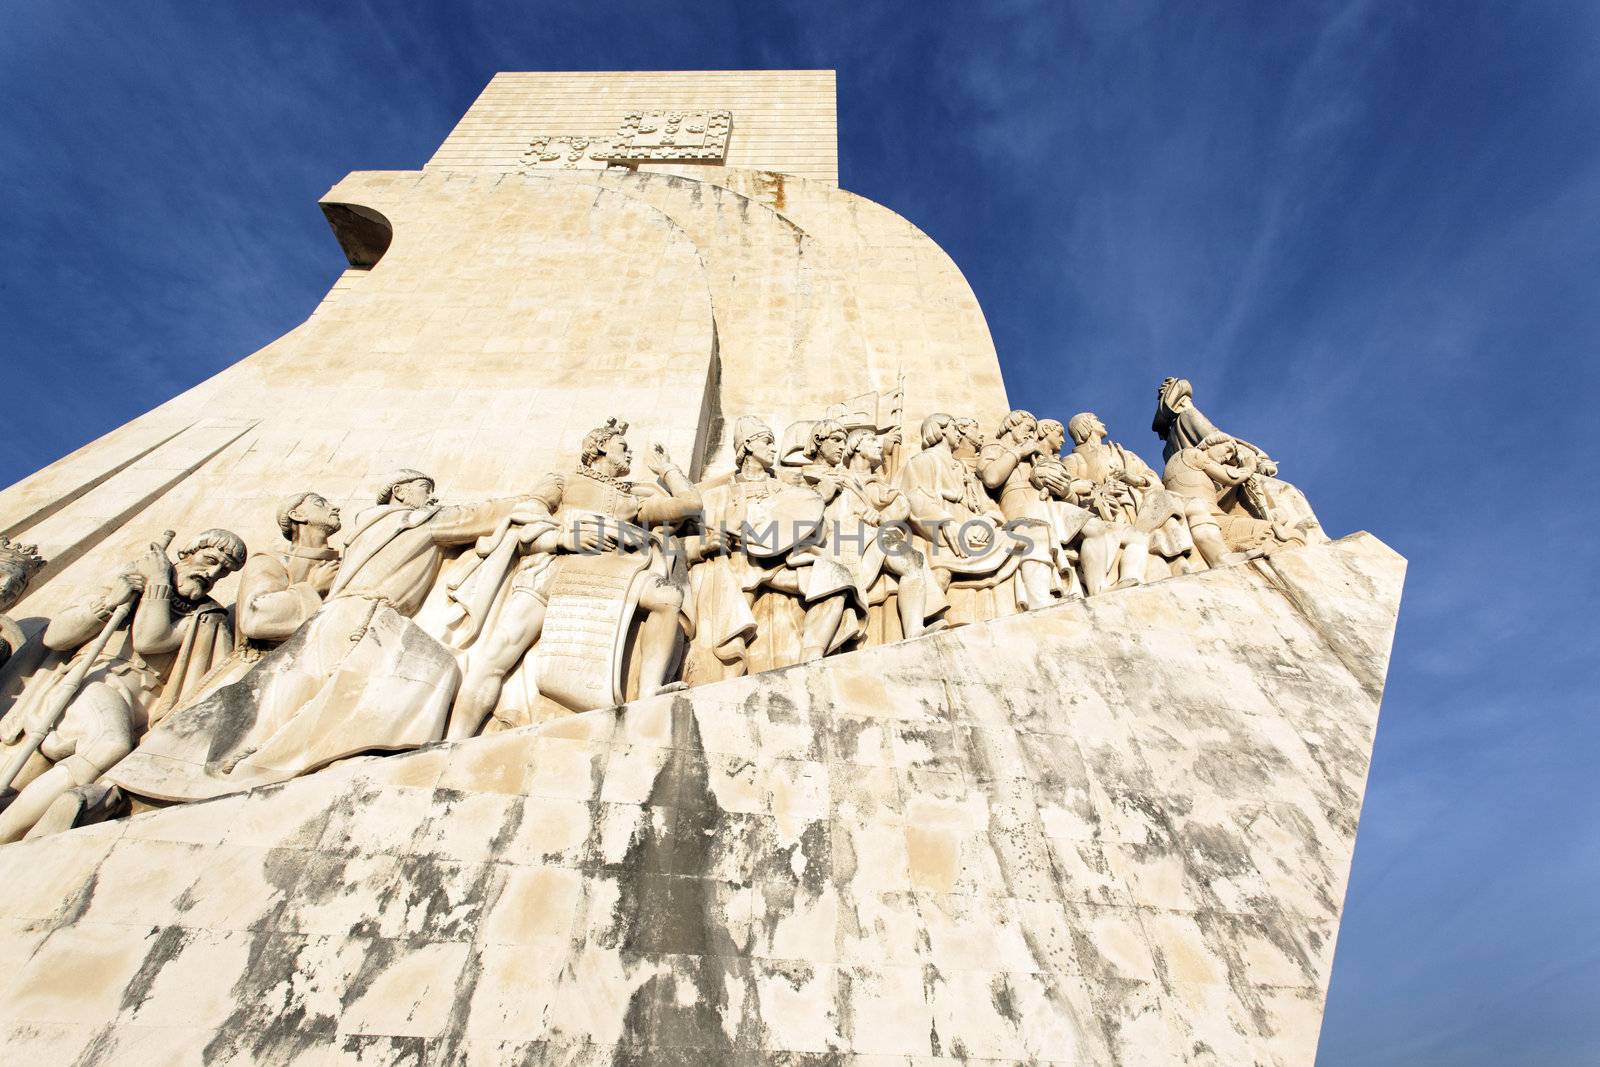 Padrao dos Descobrimentos and blue sky in Lisbon